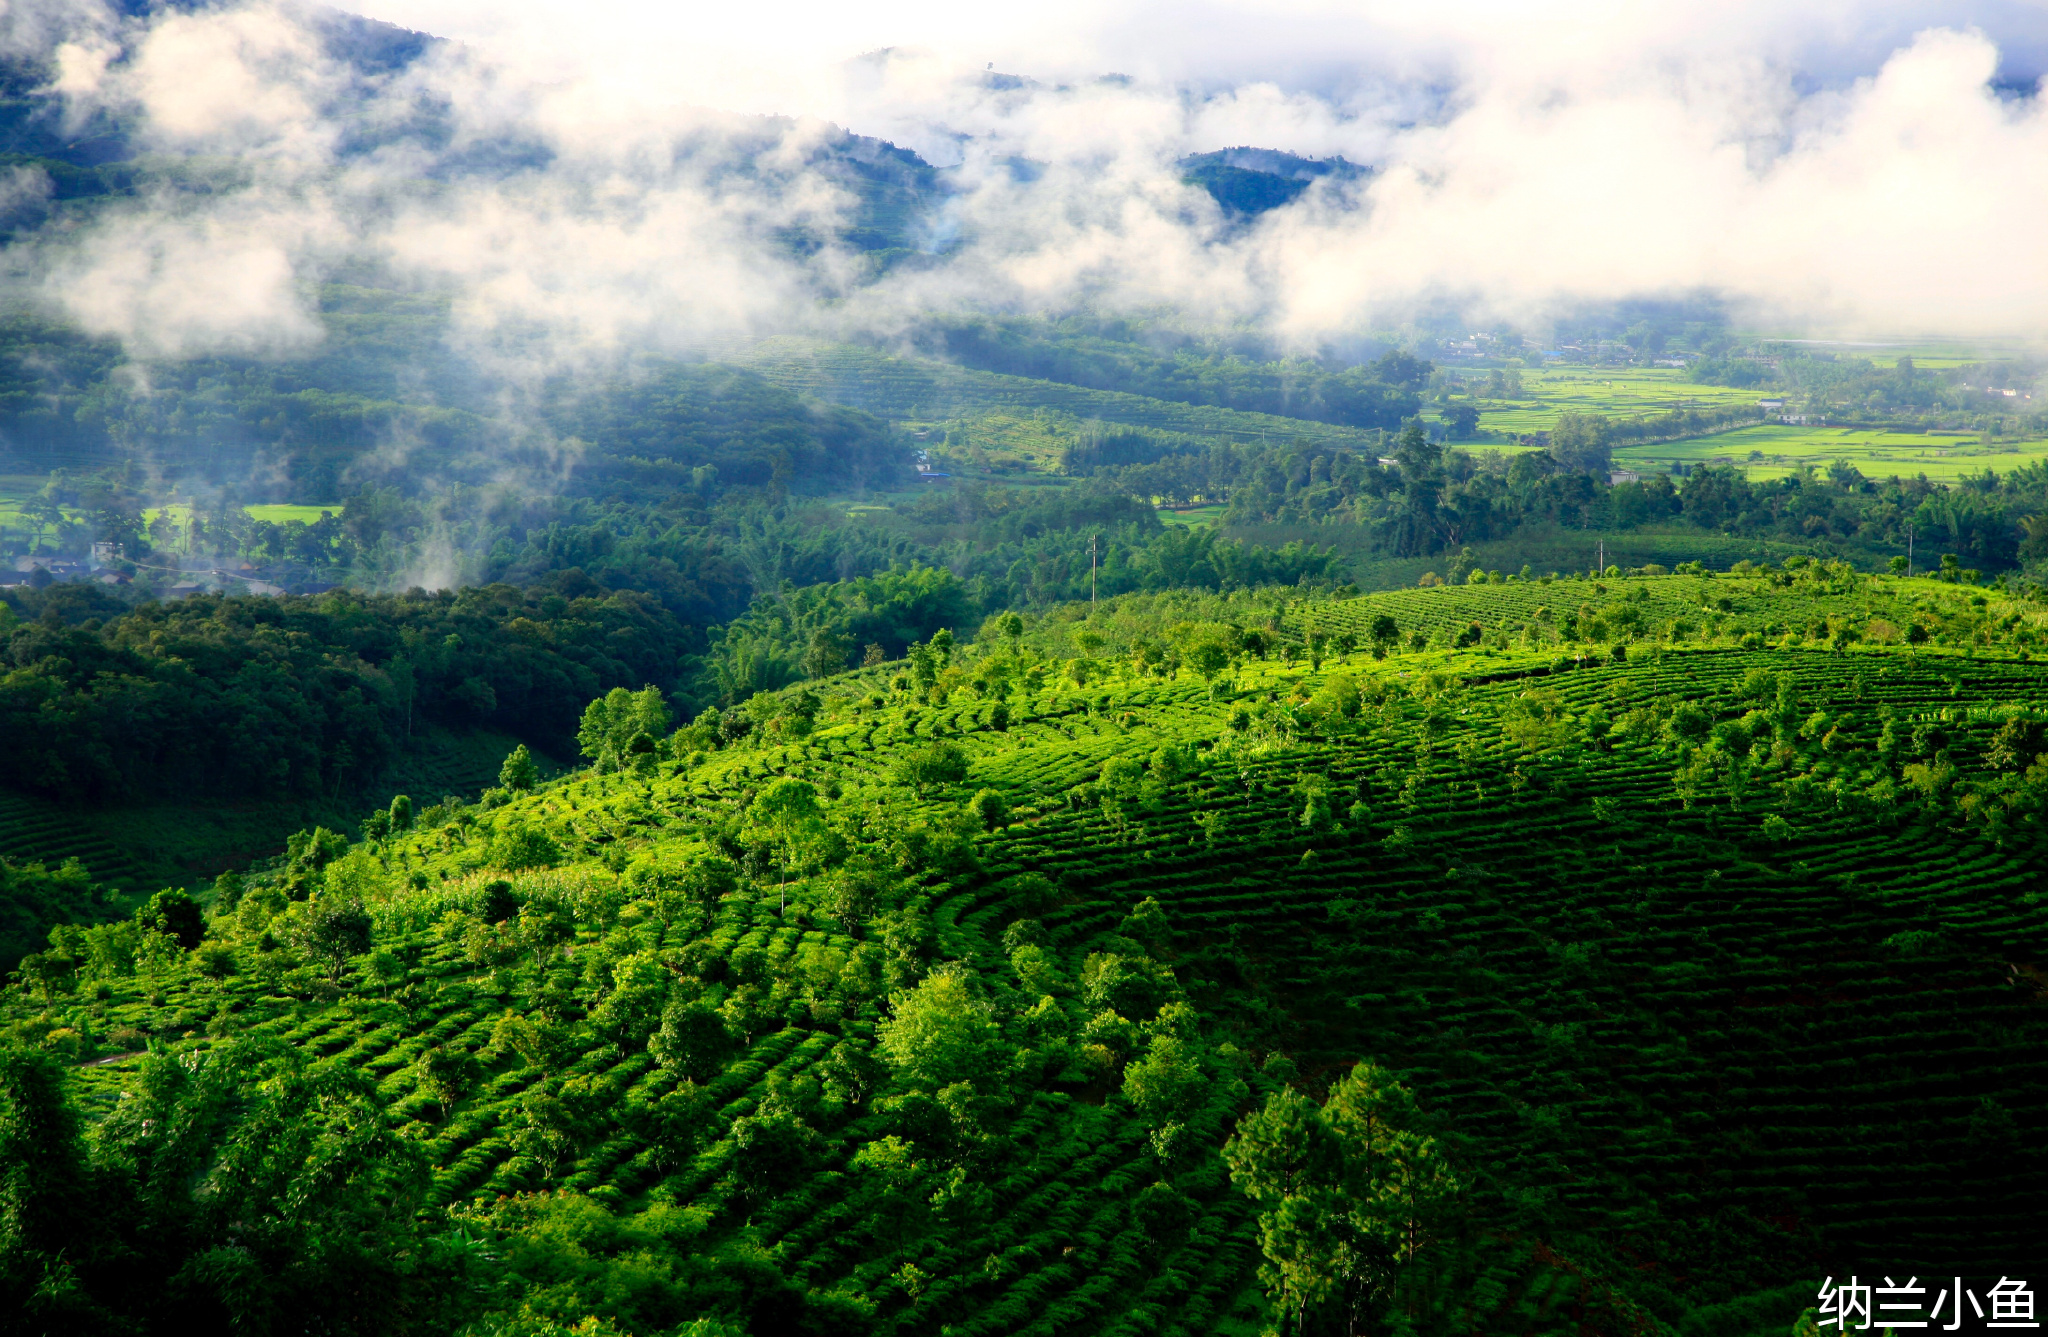 勇闯山路十八弯 去探访世界上最美最壮观的茶山